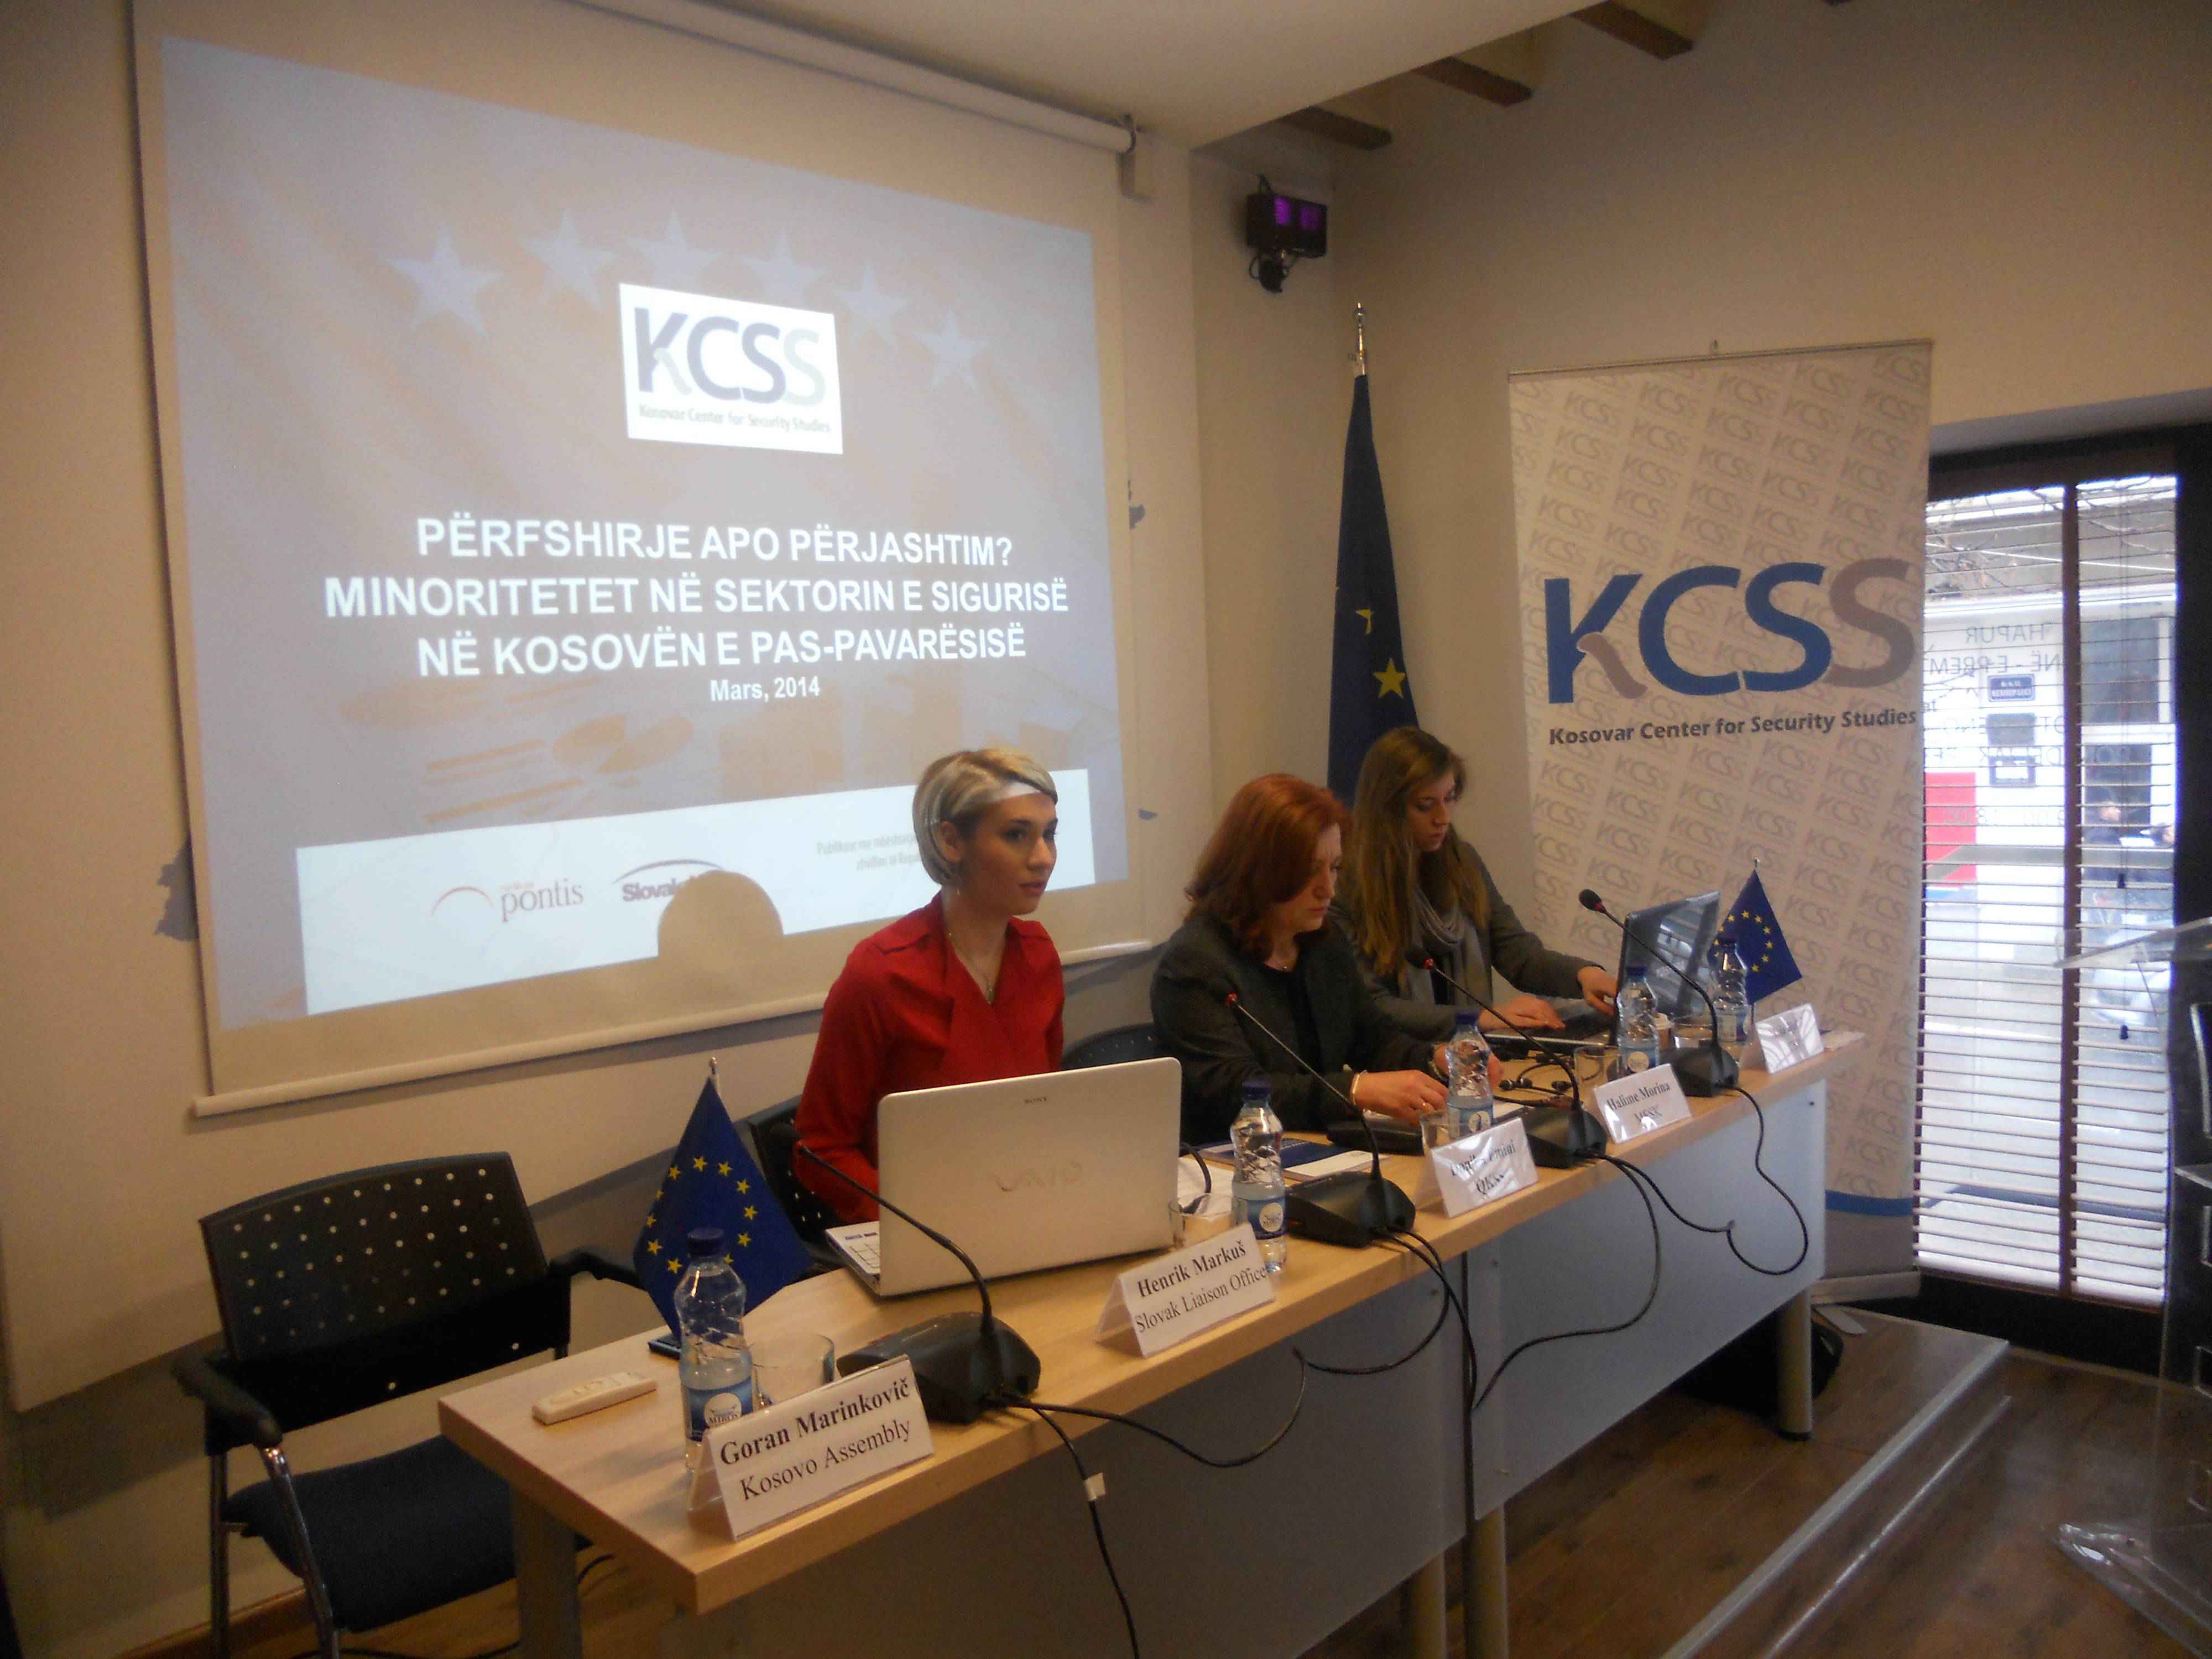 Minoritetet në Sektorin e Sigurisë në Kosovën e pas-pavarësisë